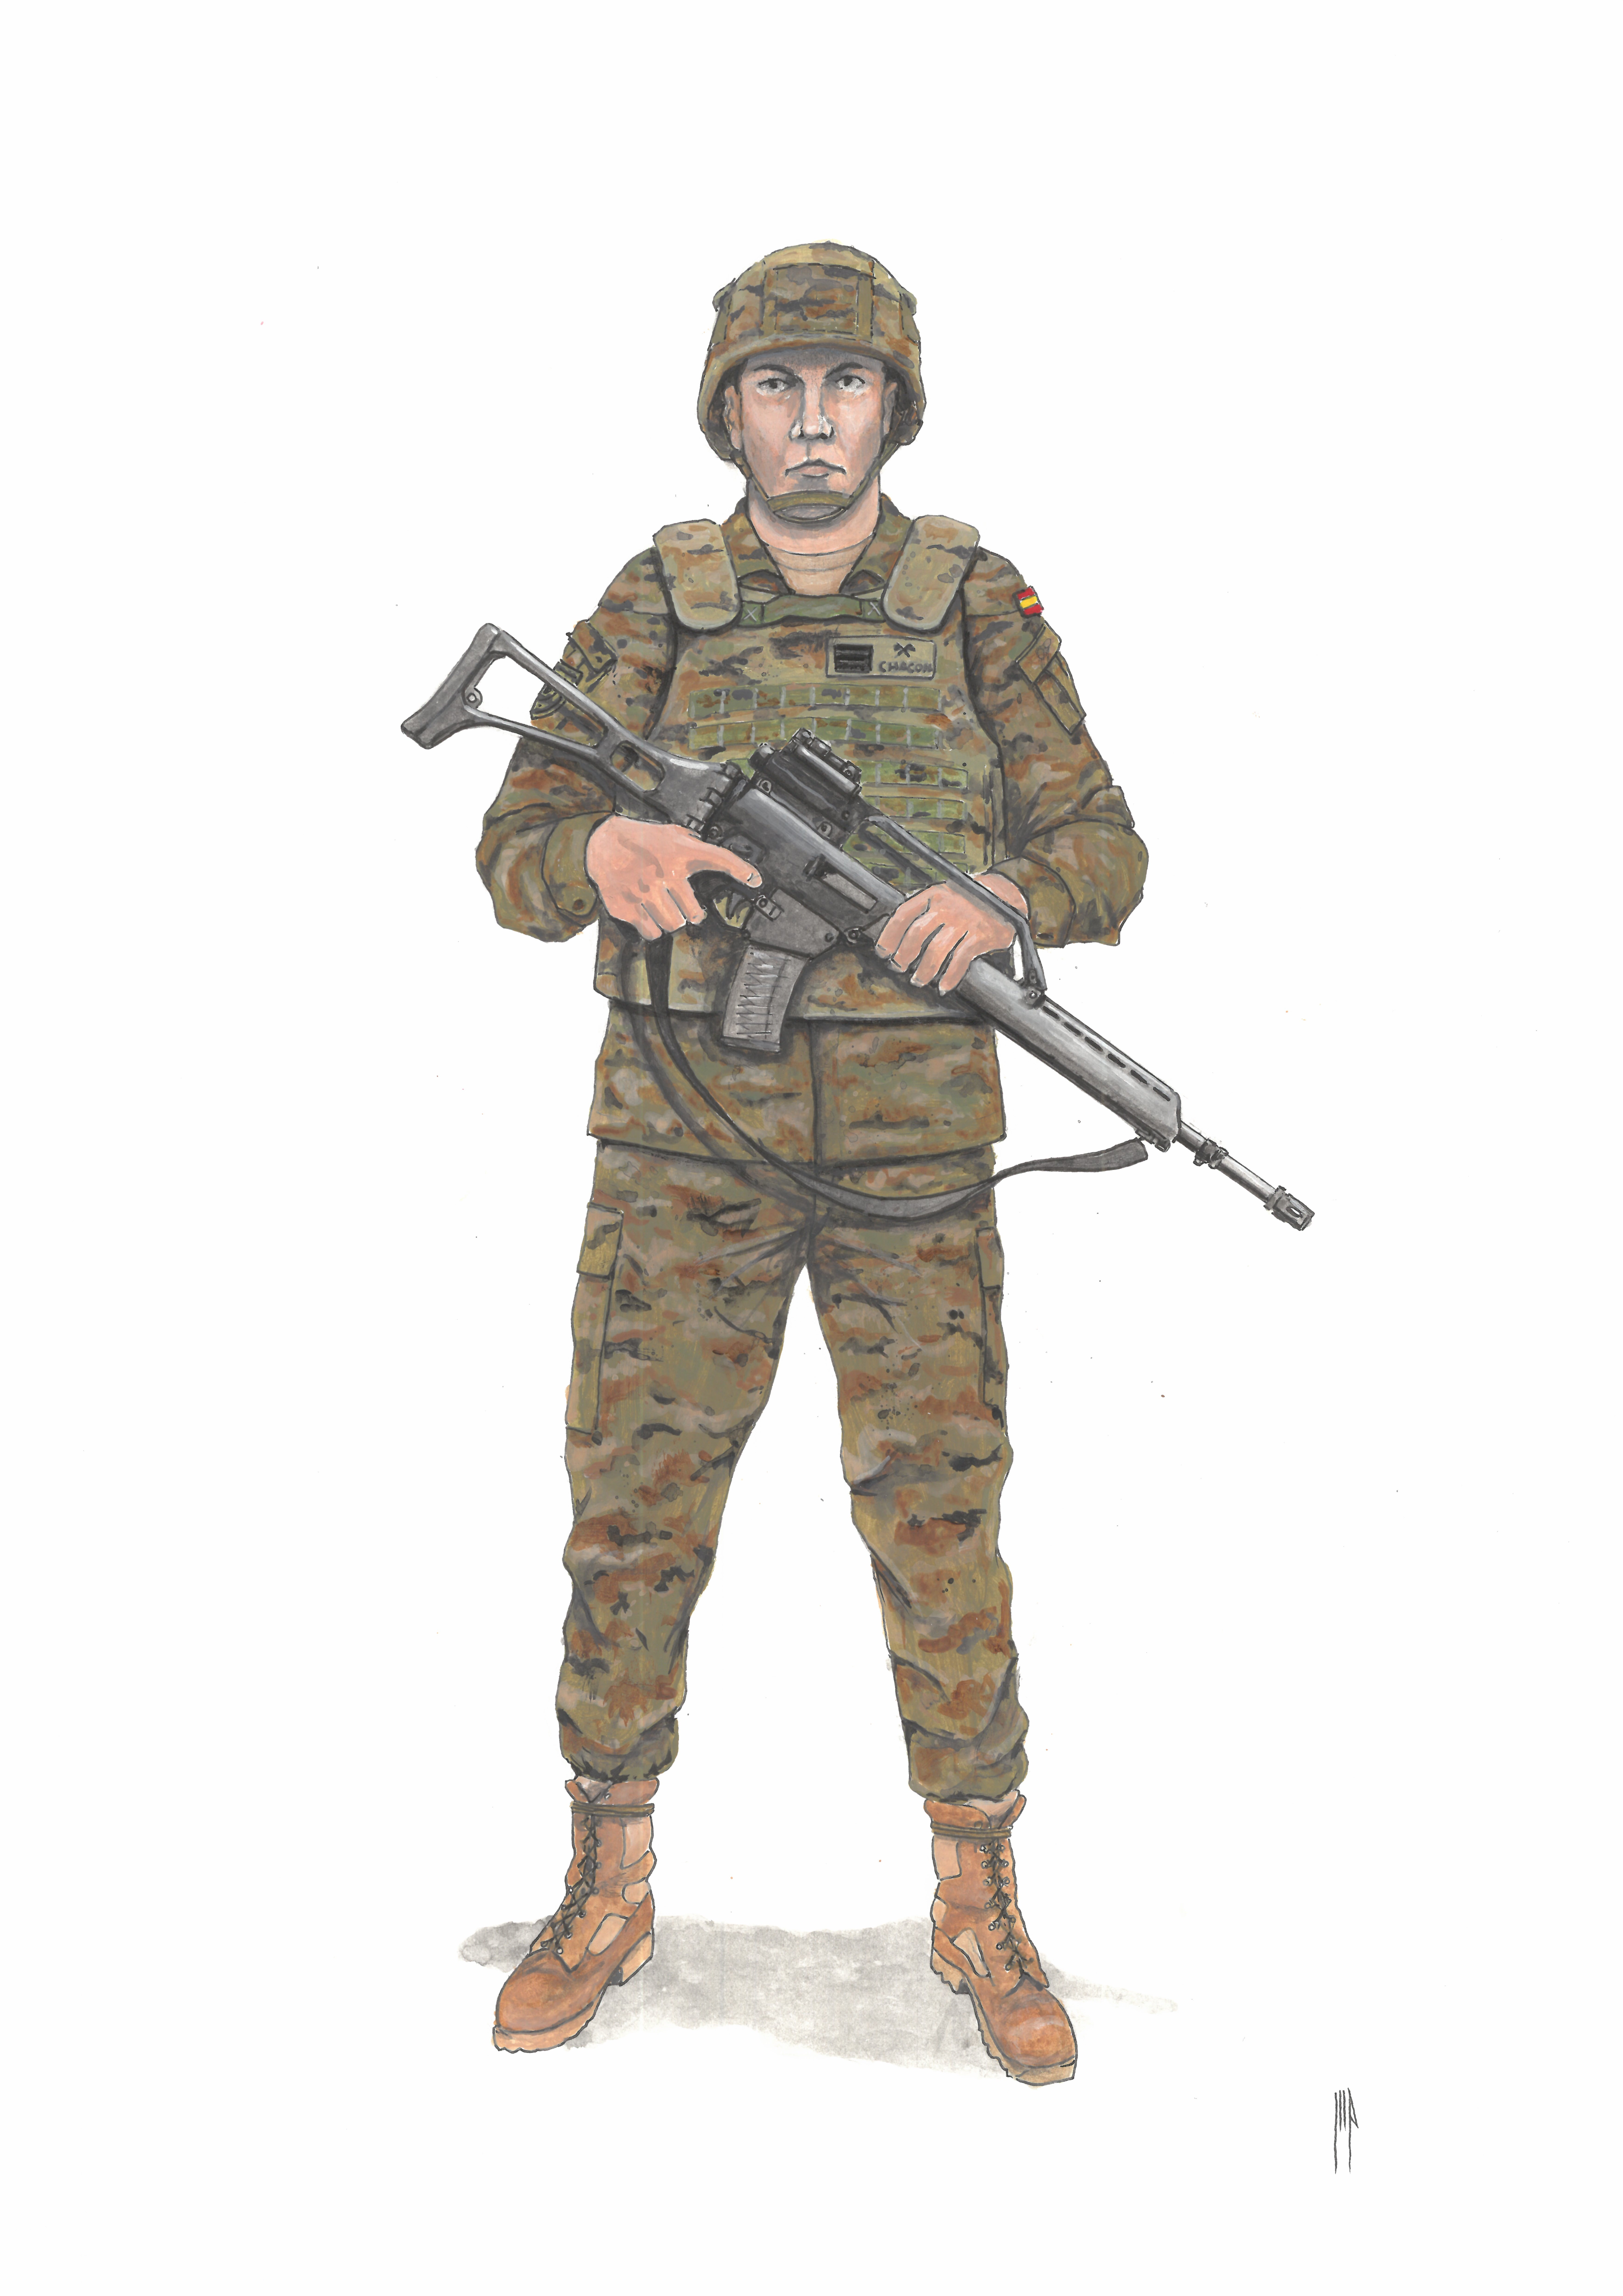 Sargento alumno con uniforme de campaña. 2020